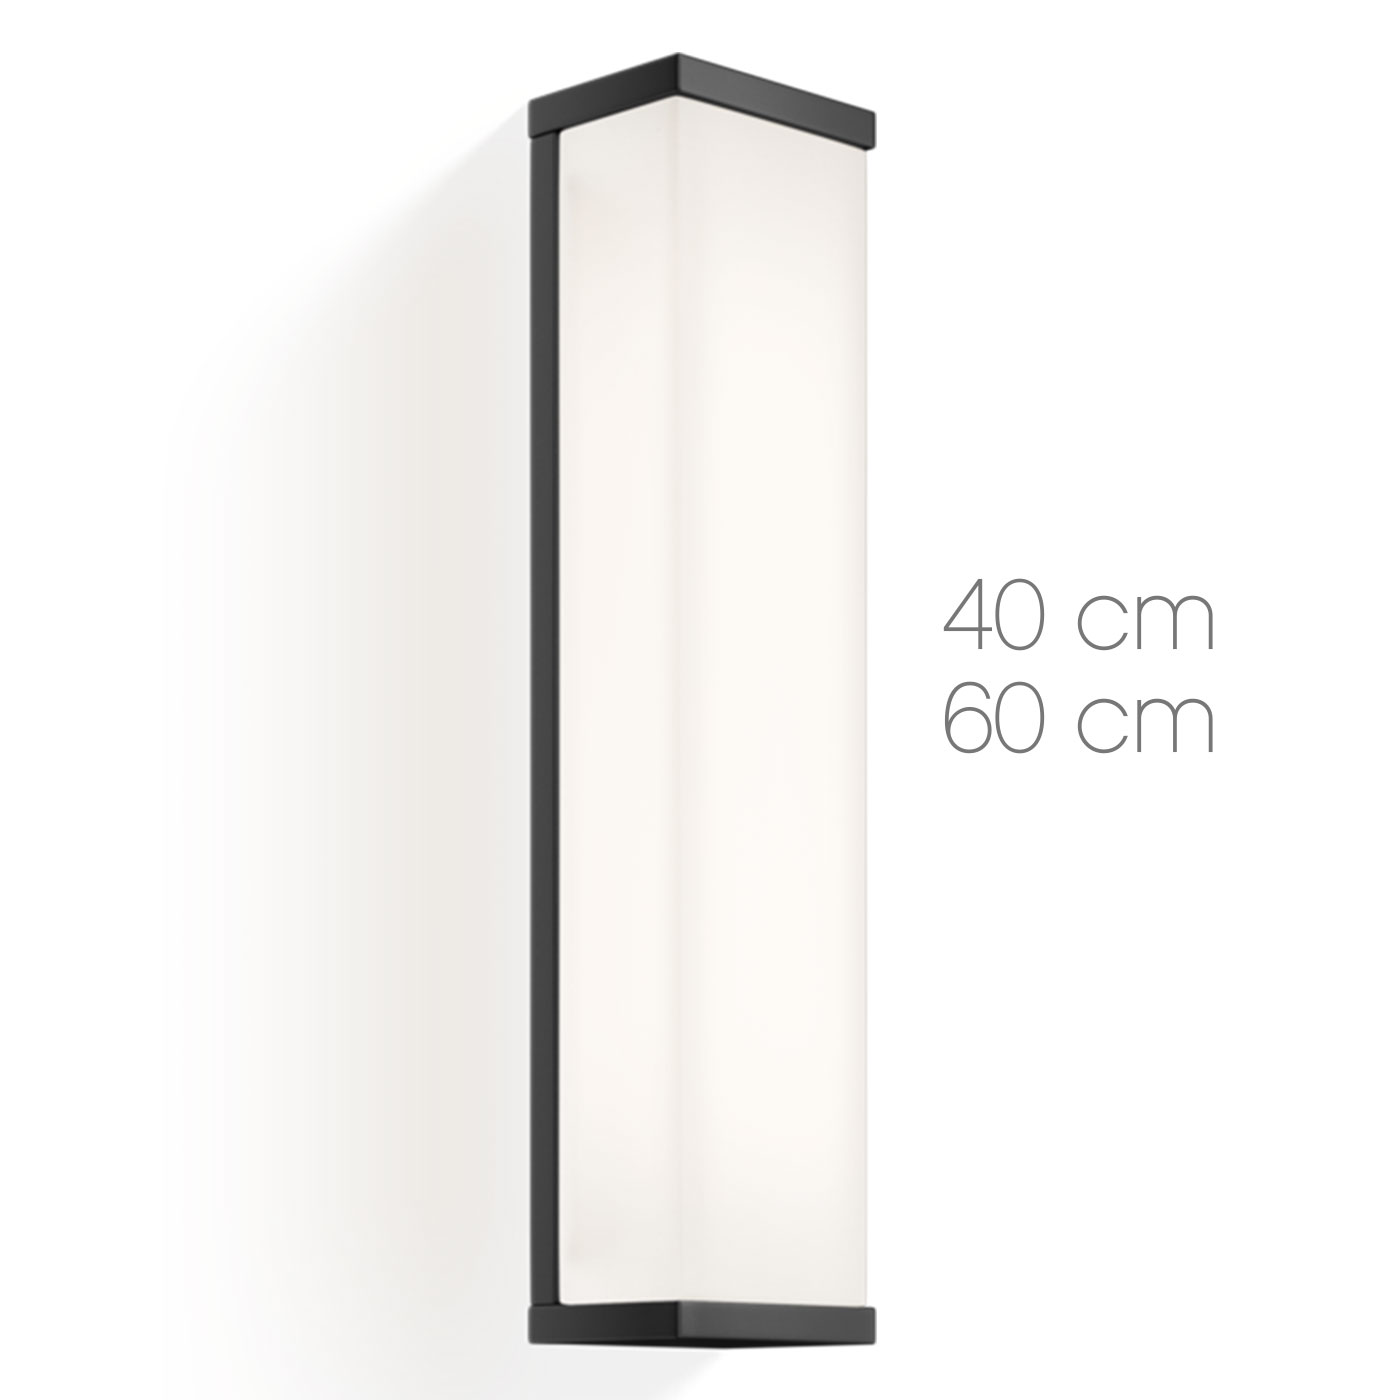 Schwarze Bad-Spiegel-Wandleuchte 40/60 cm: Matt-schwarze Bad-Wandleuchte, ideal für Spiegel (hier Modell 1 mit 40 cm Höhe)